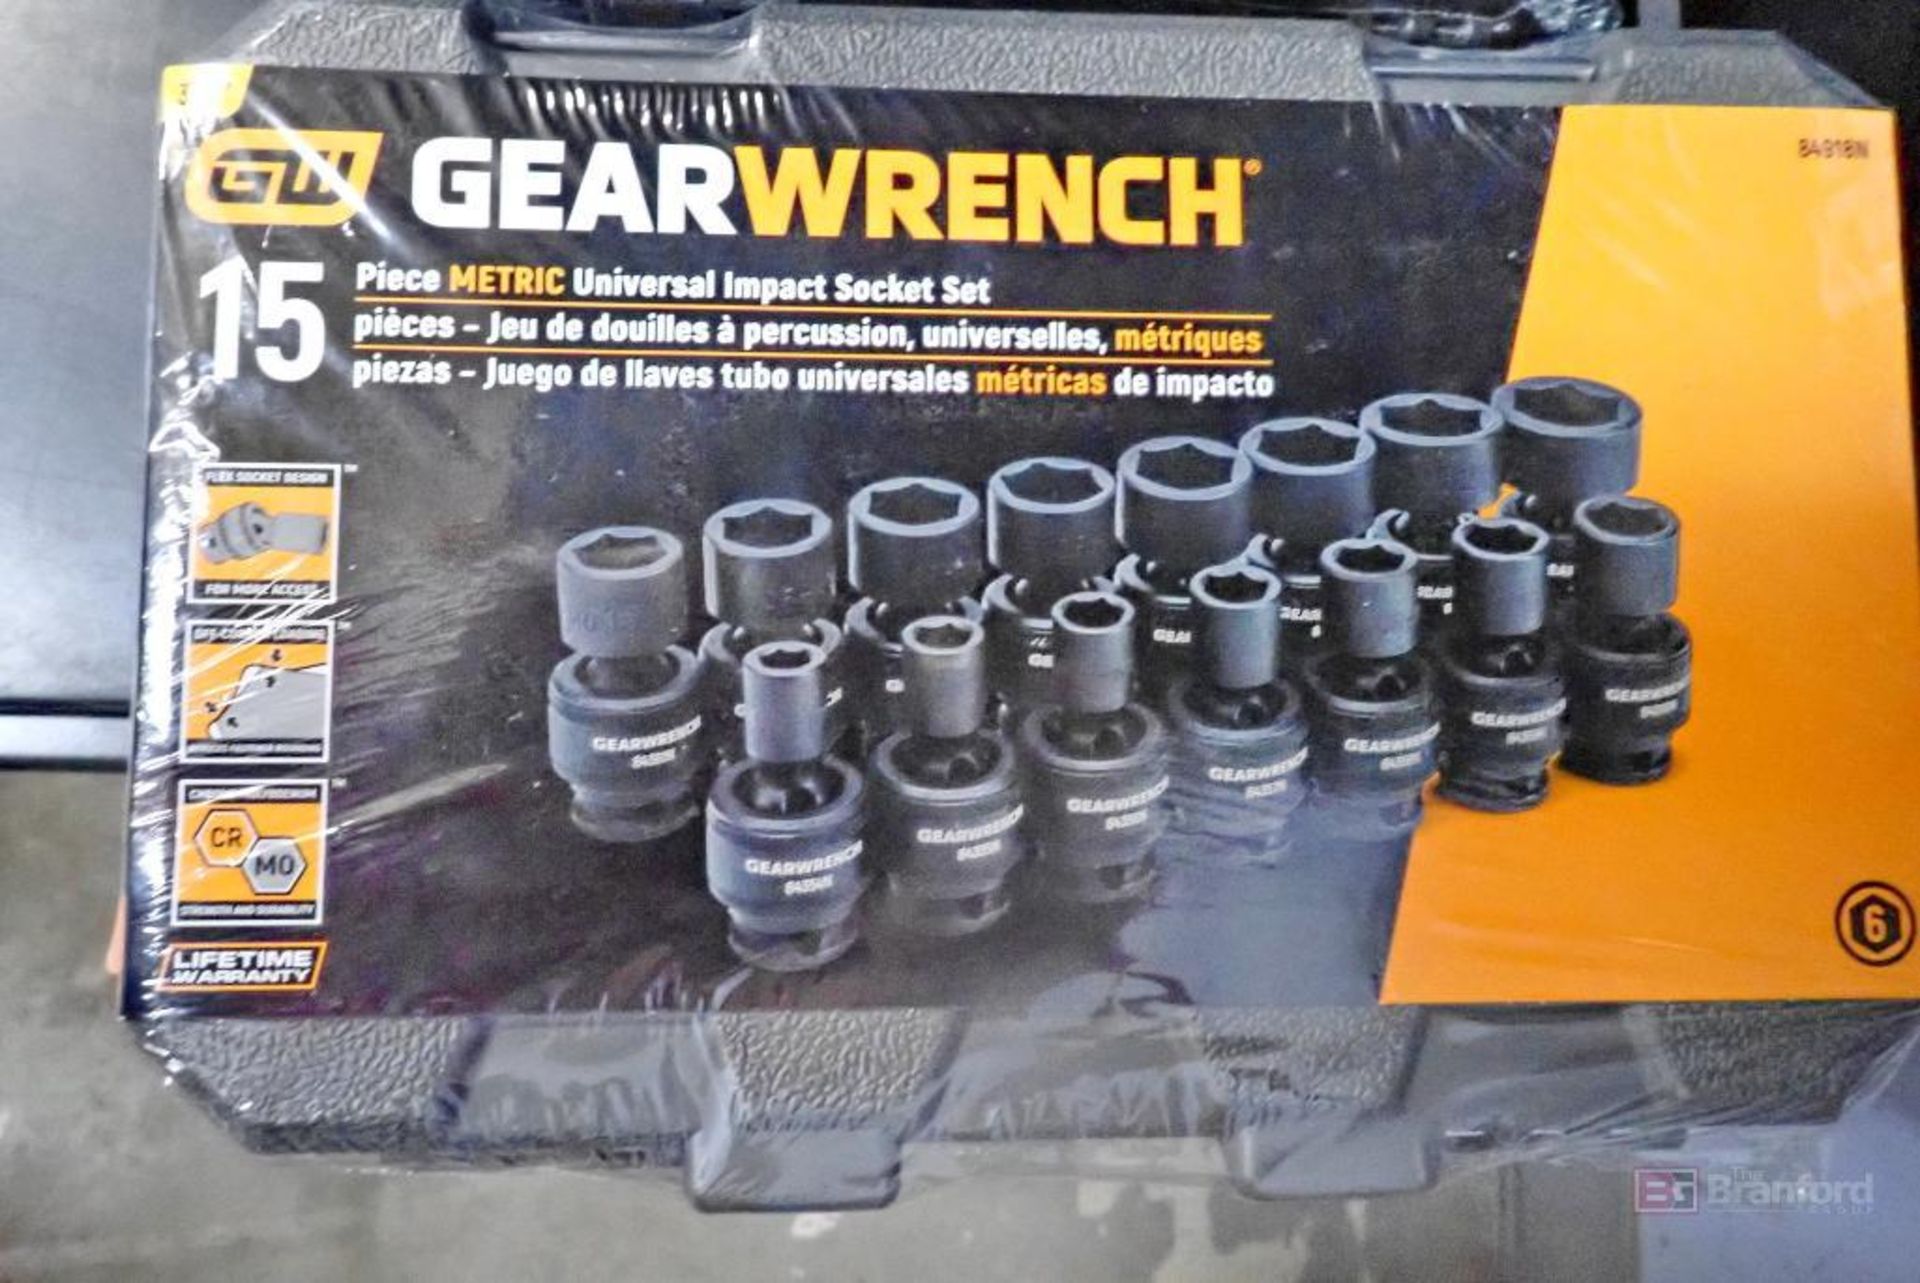 GearWrench 84918N 15 Pc. Metric Universal Impact Socket Set - Image 2 of 5